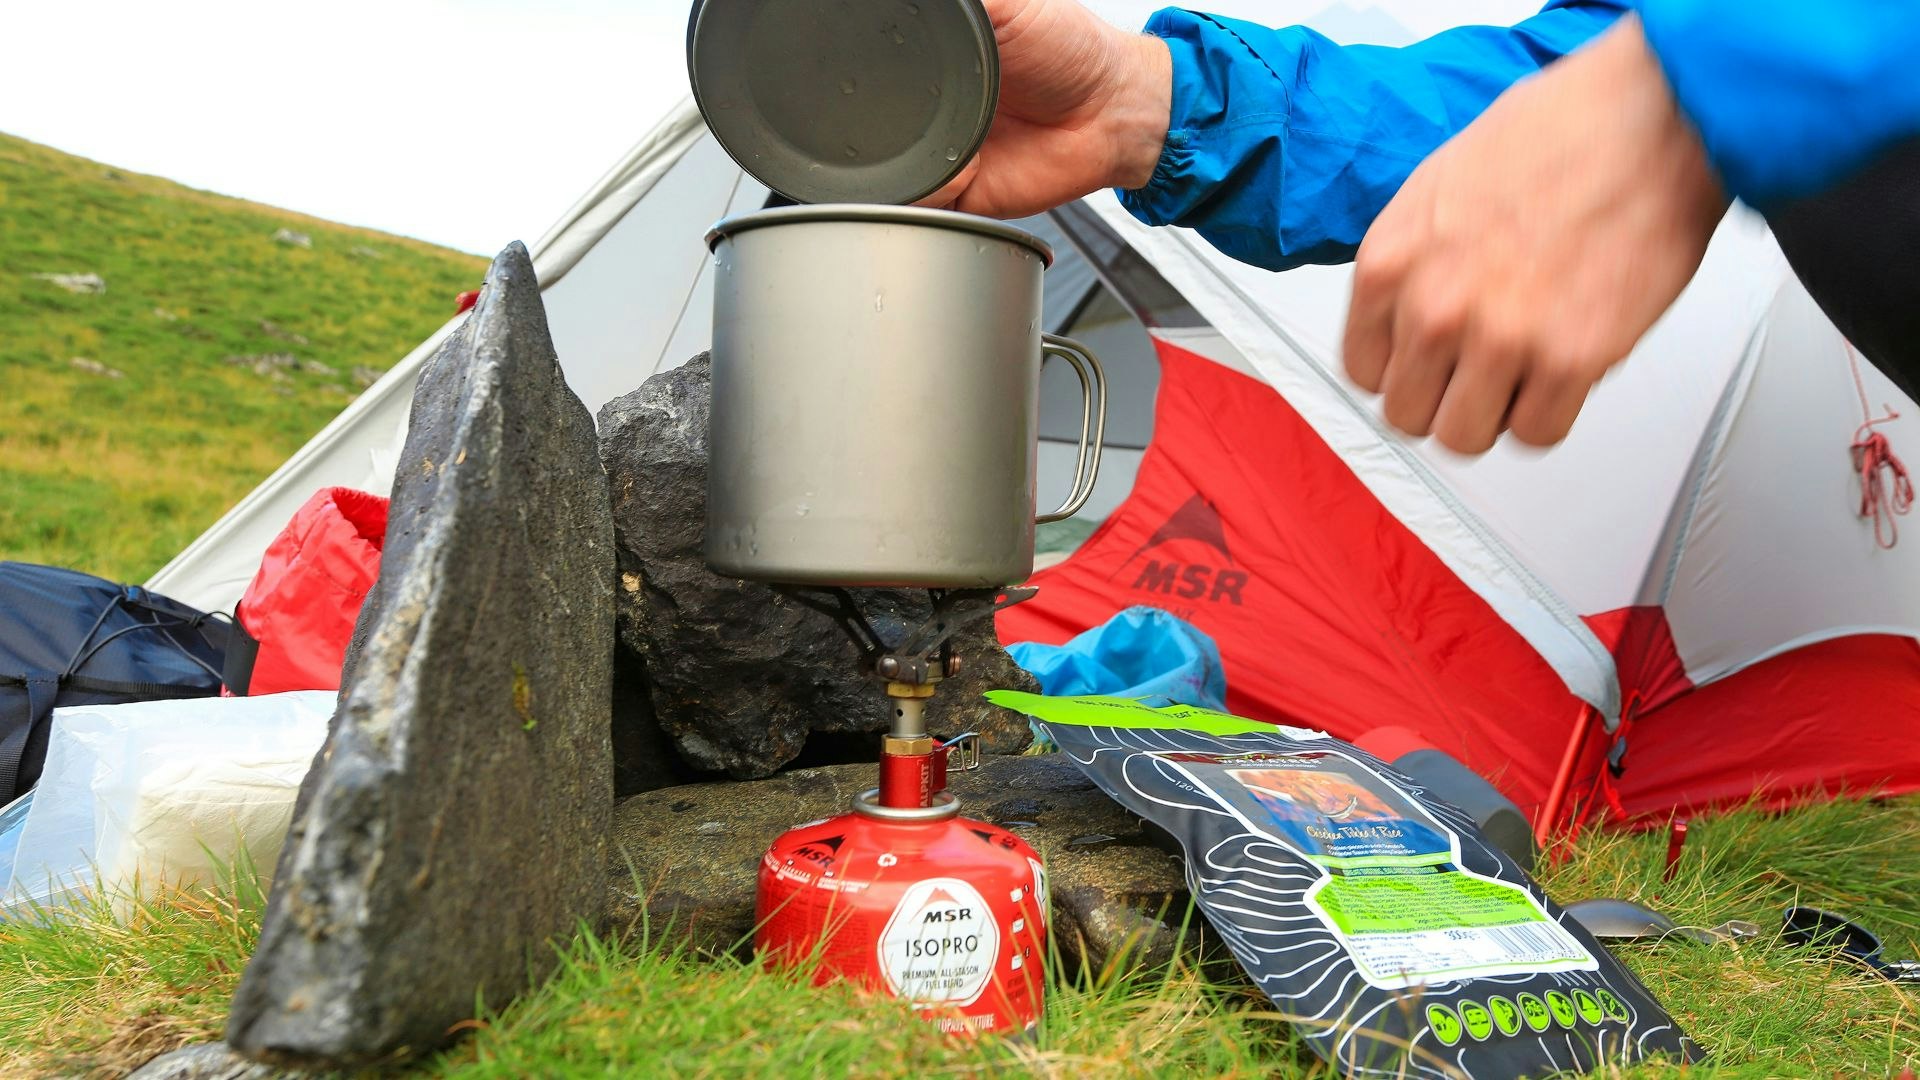 Titanium mug on a camping stove as a lightweight setup